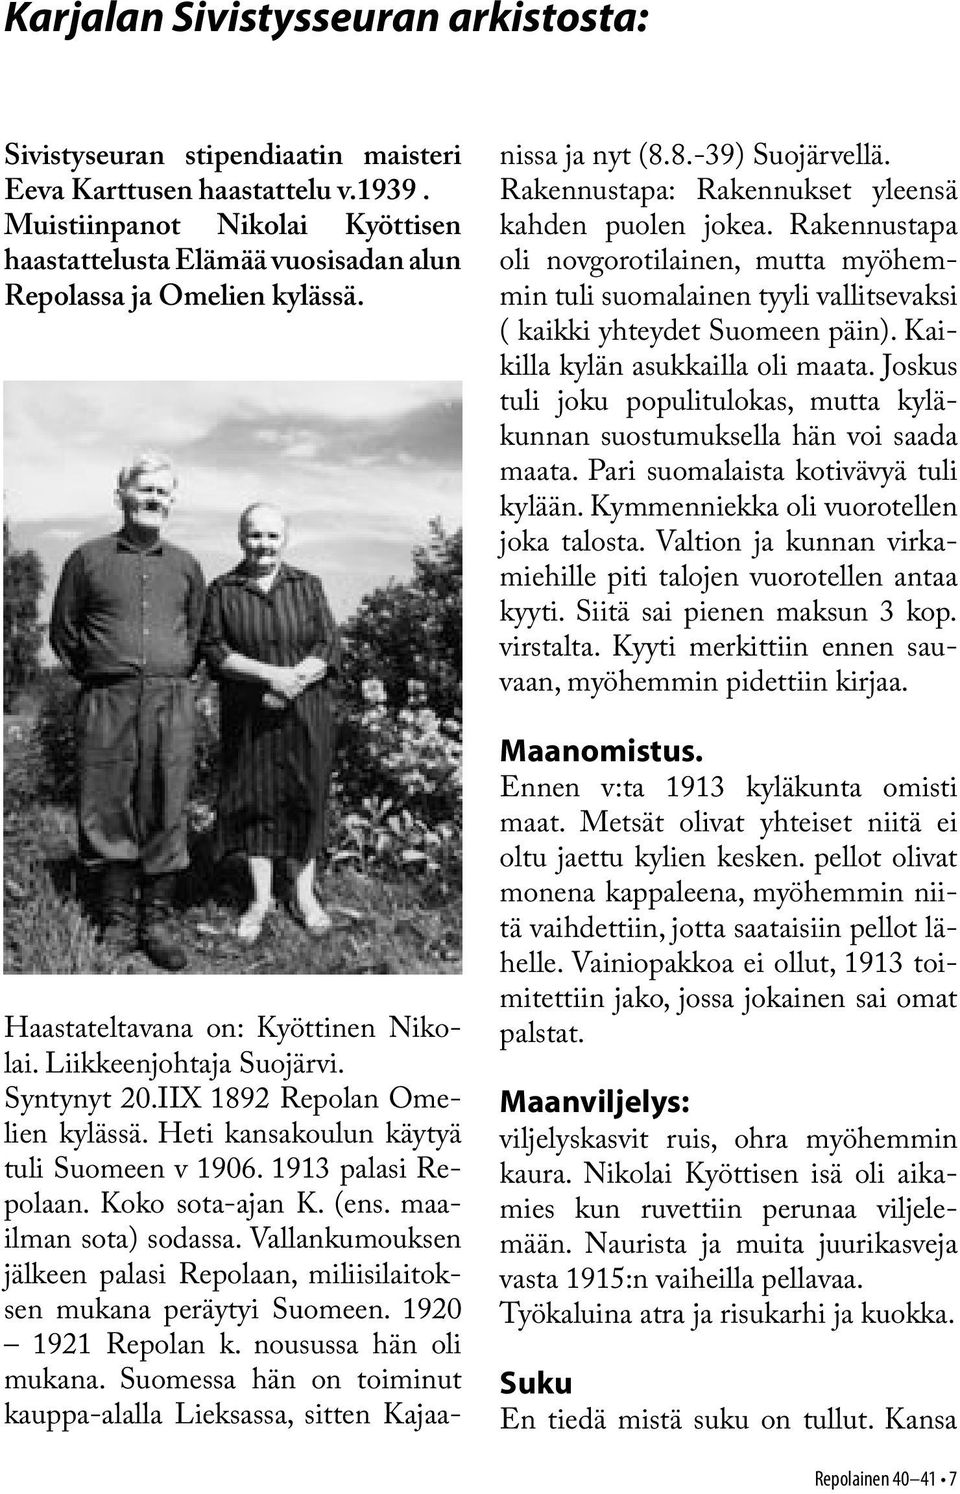 IIX 1892 Repolan Omelien kylässä. Heti kansakoulun käytyä tuli Suomeen v 1906. 1913 palasi Repolaan. Koko sota-ajan K. (ens. maailman sota) sodassa.